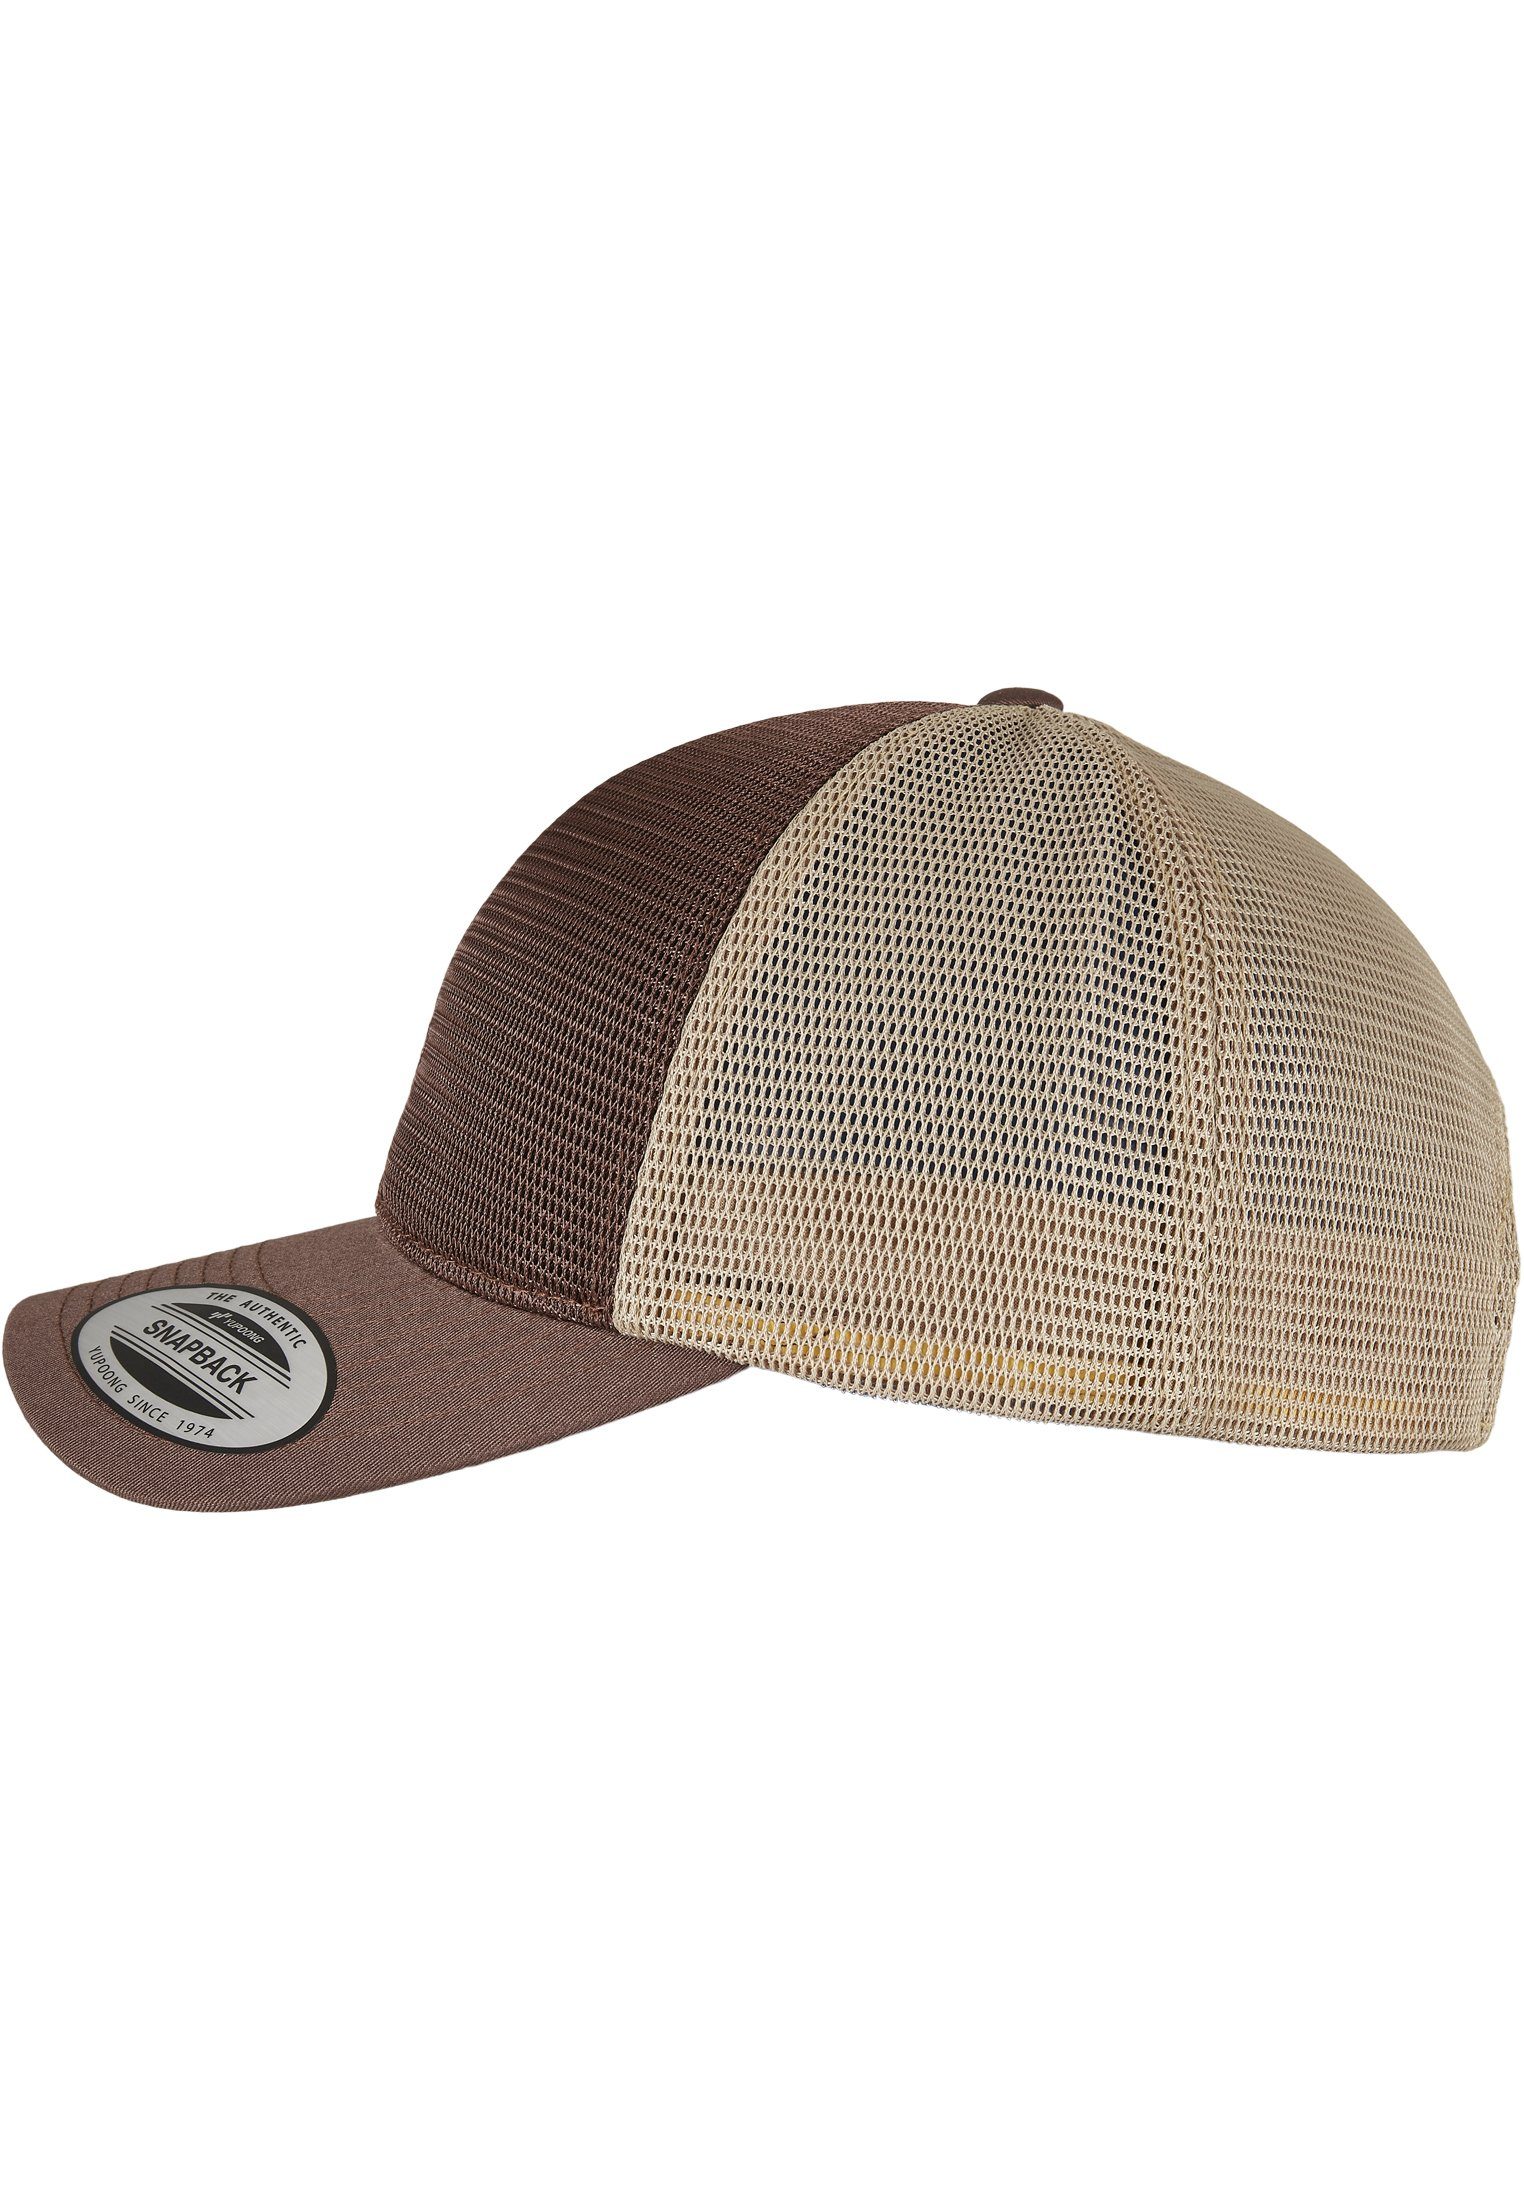 360° Omnimesh Flex Cap Accessoires 2-Tone brown/khaki Cap Flexfit